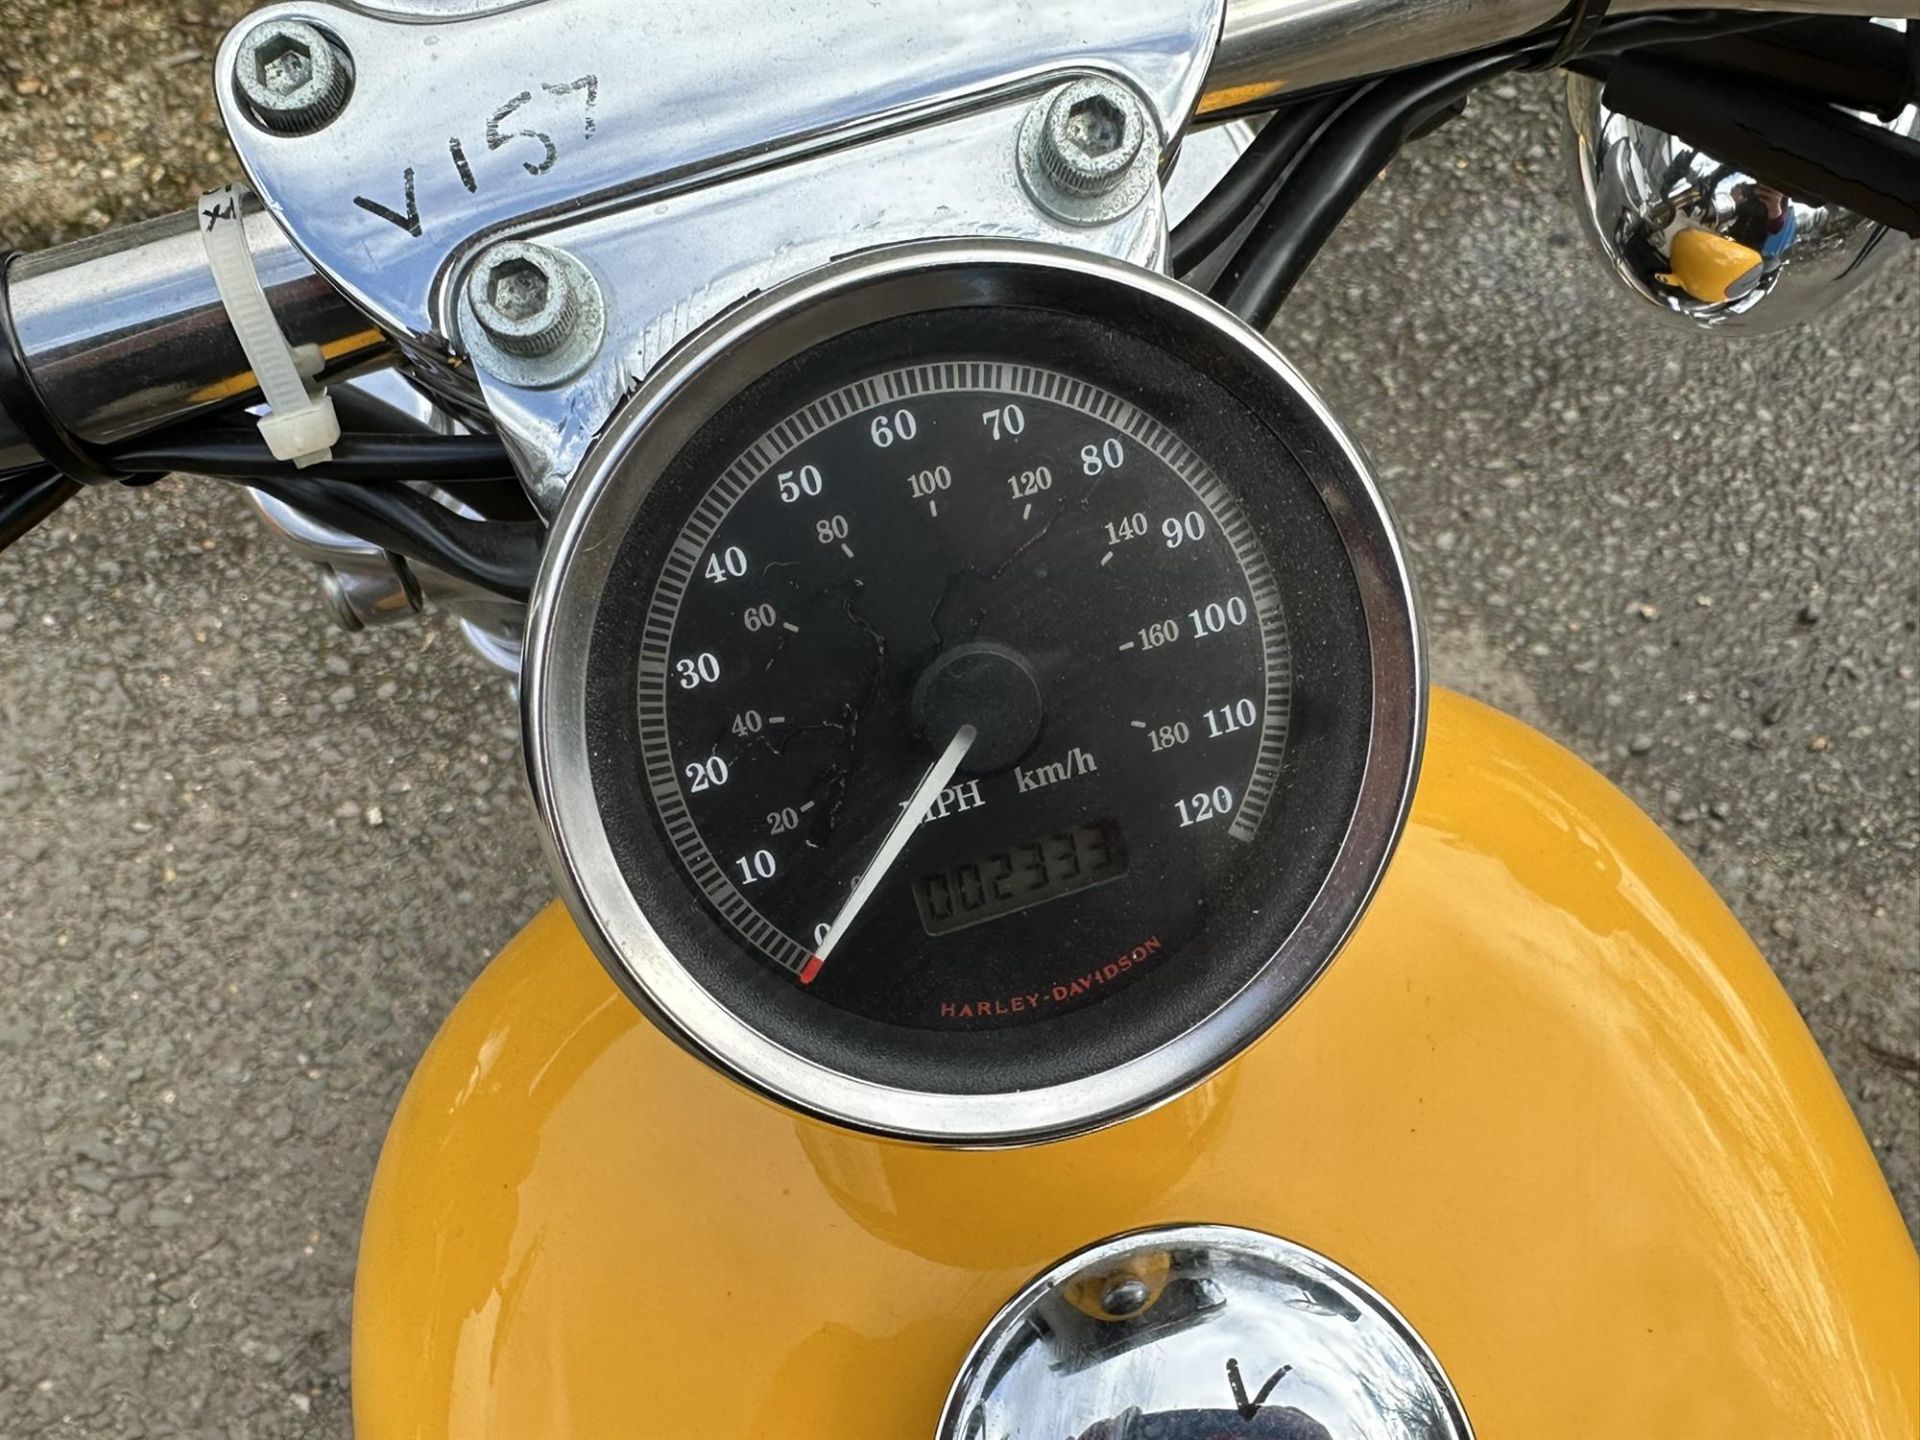 2000 Harley Davidson XL883c Sportster 883cc - Bild 5 aus 7